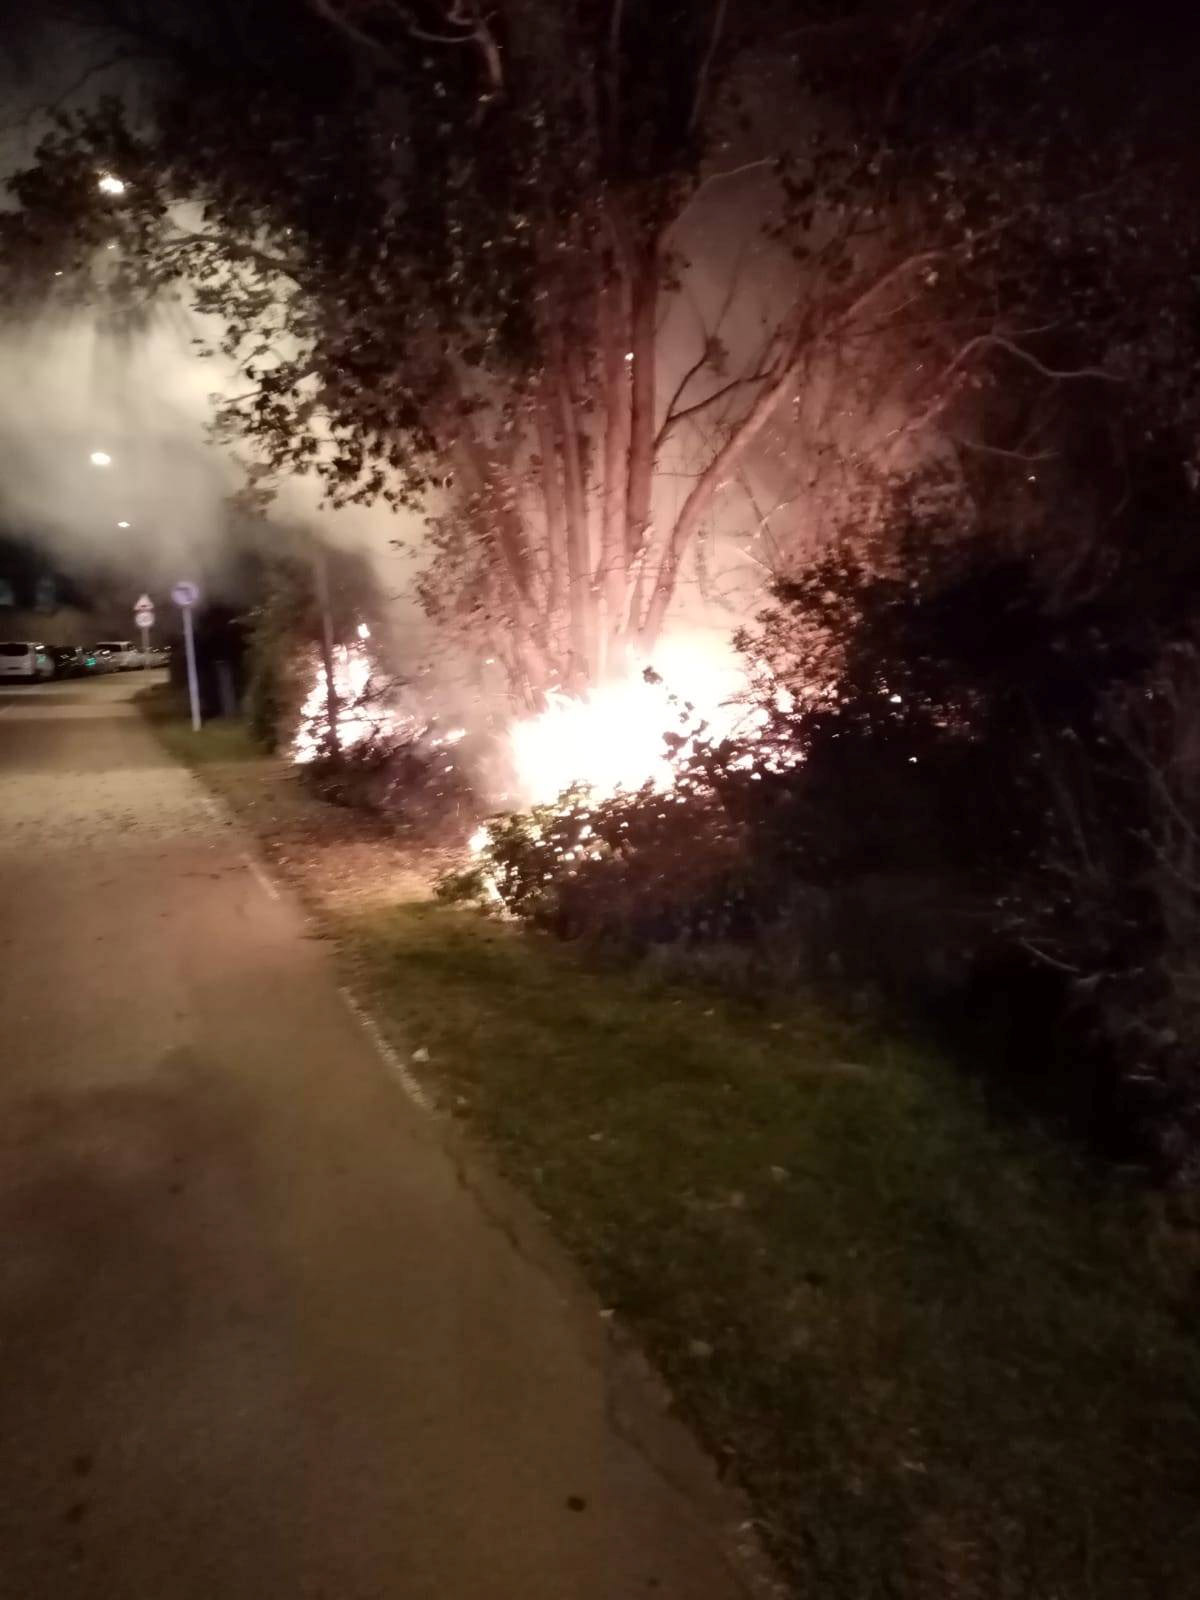 Onada d'incendis provocats a Vilassar